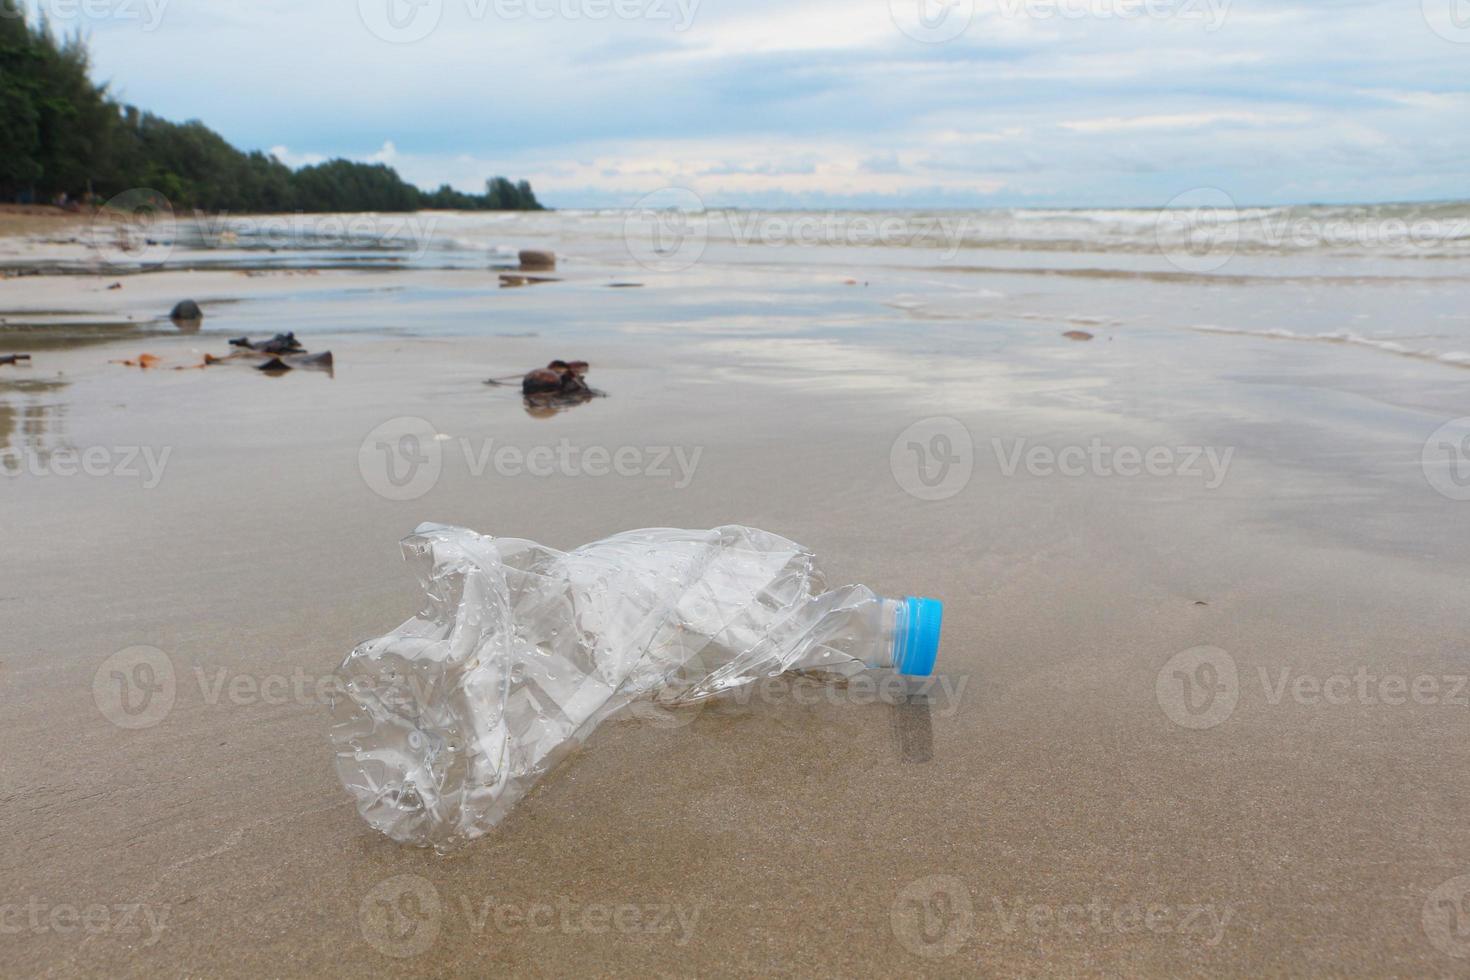 plastflaskor lämnas på stranden efter att turisterna har tagit semester. sopor på sandstranden. foto